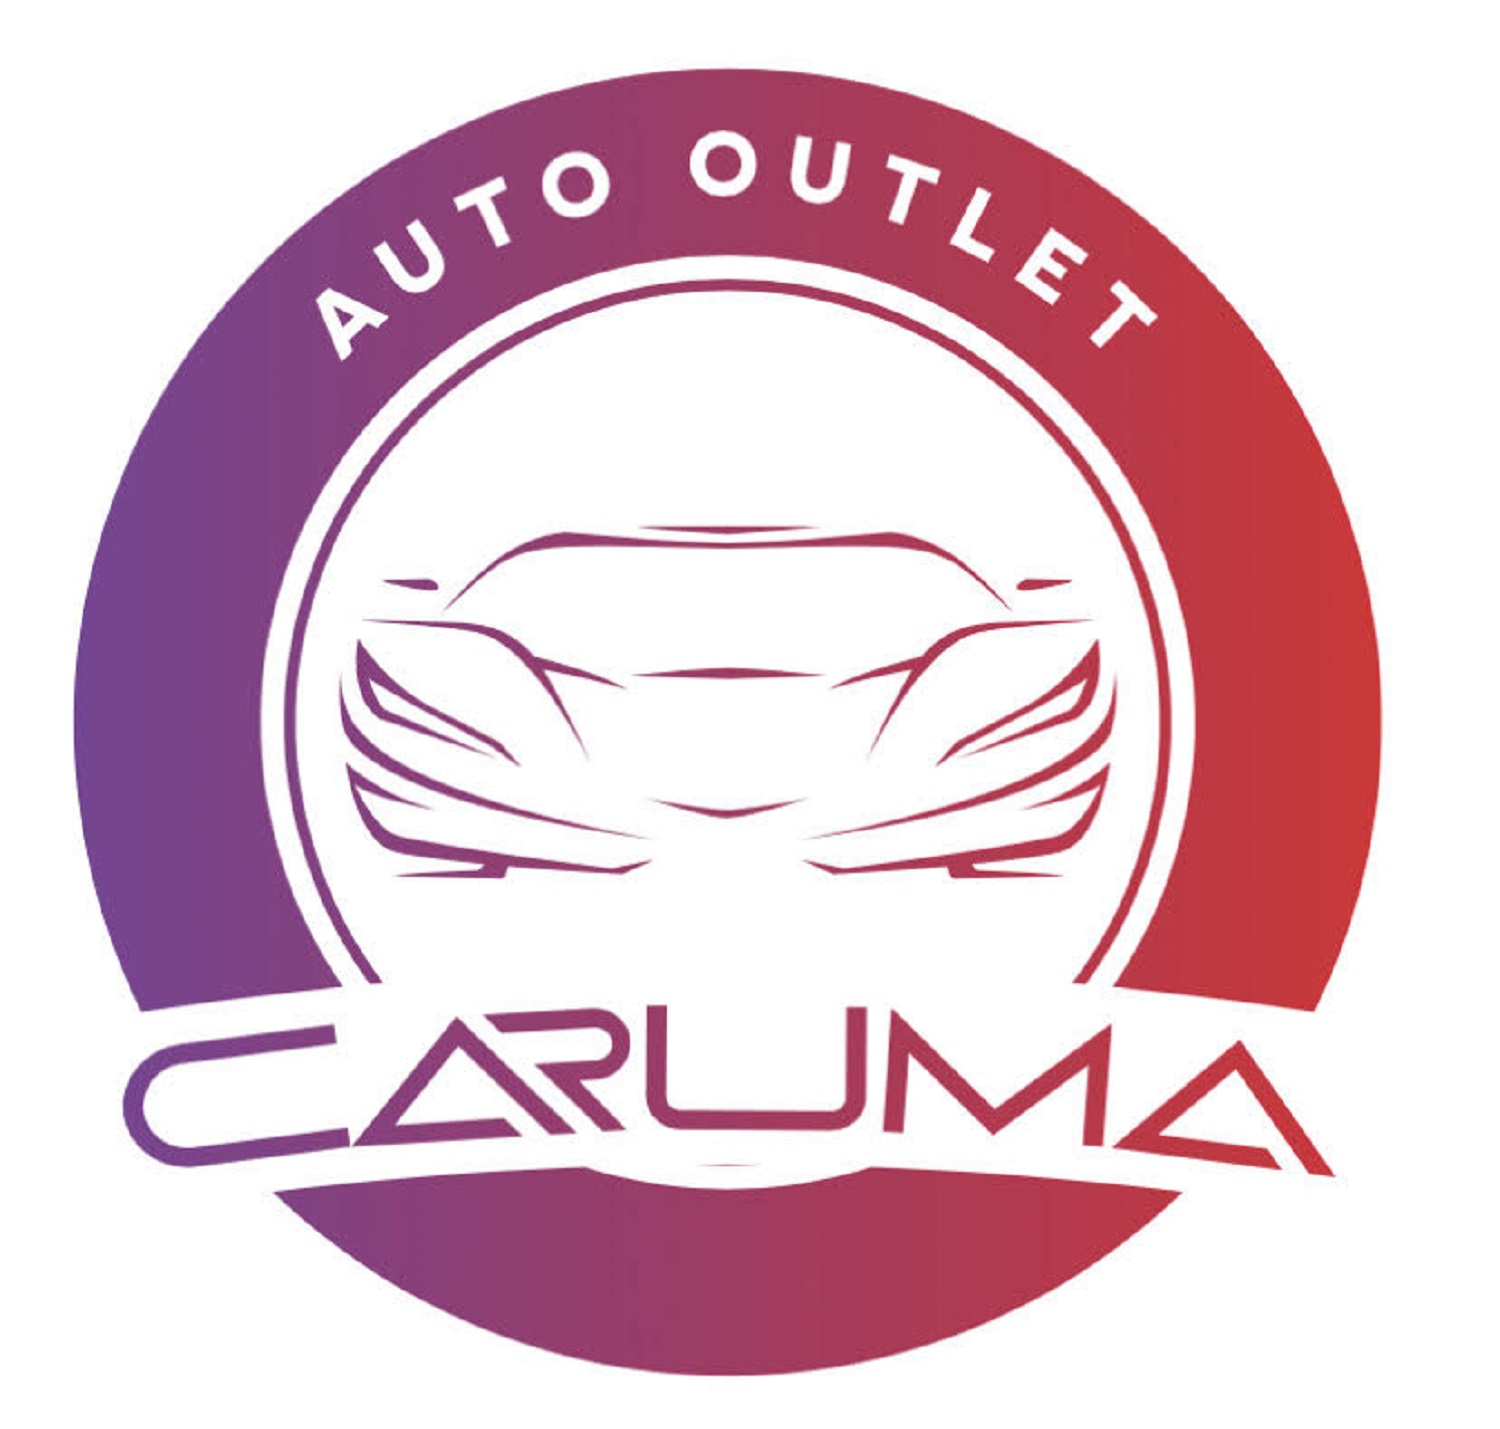 Caruma Auto Outlet